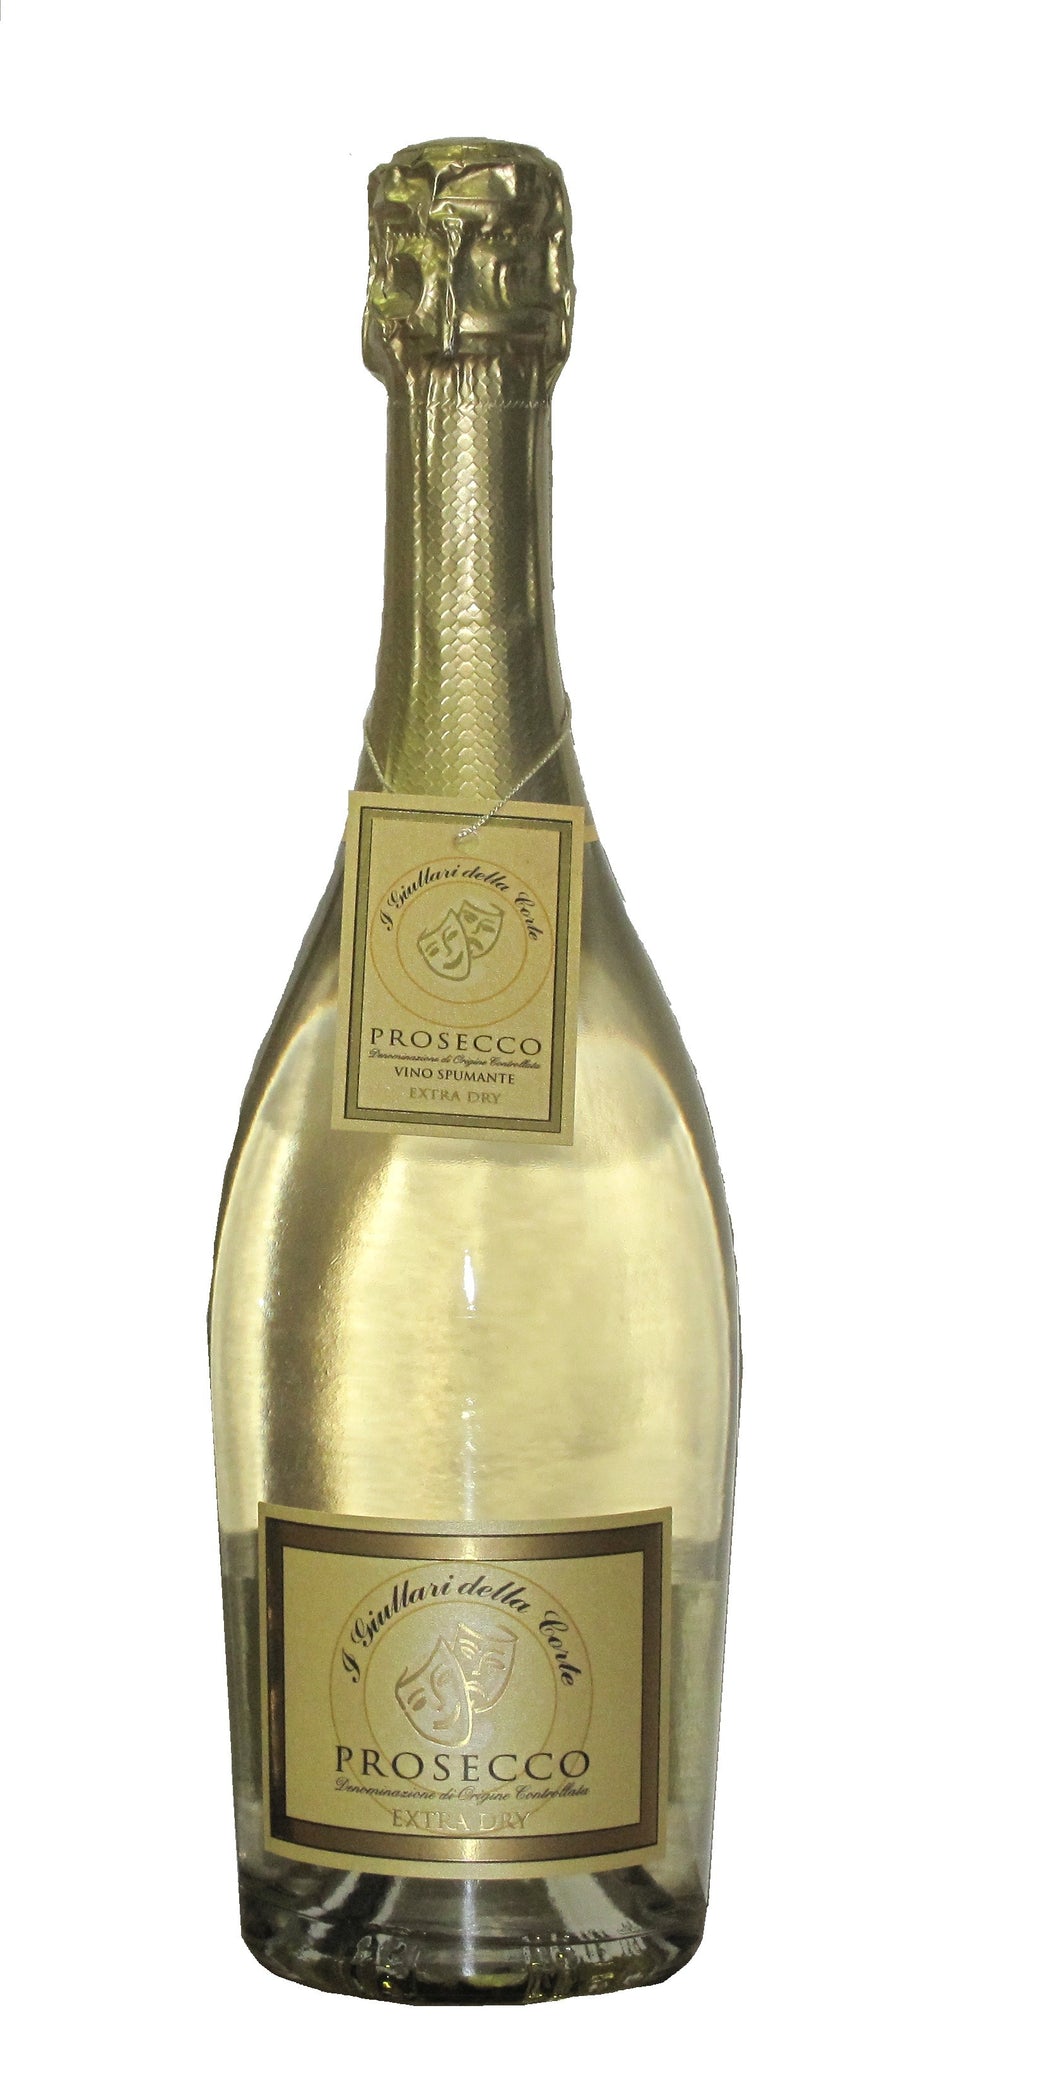 I Giullari Della Corte - Prosecco Extra Dry DOP - 3 Bottles